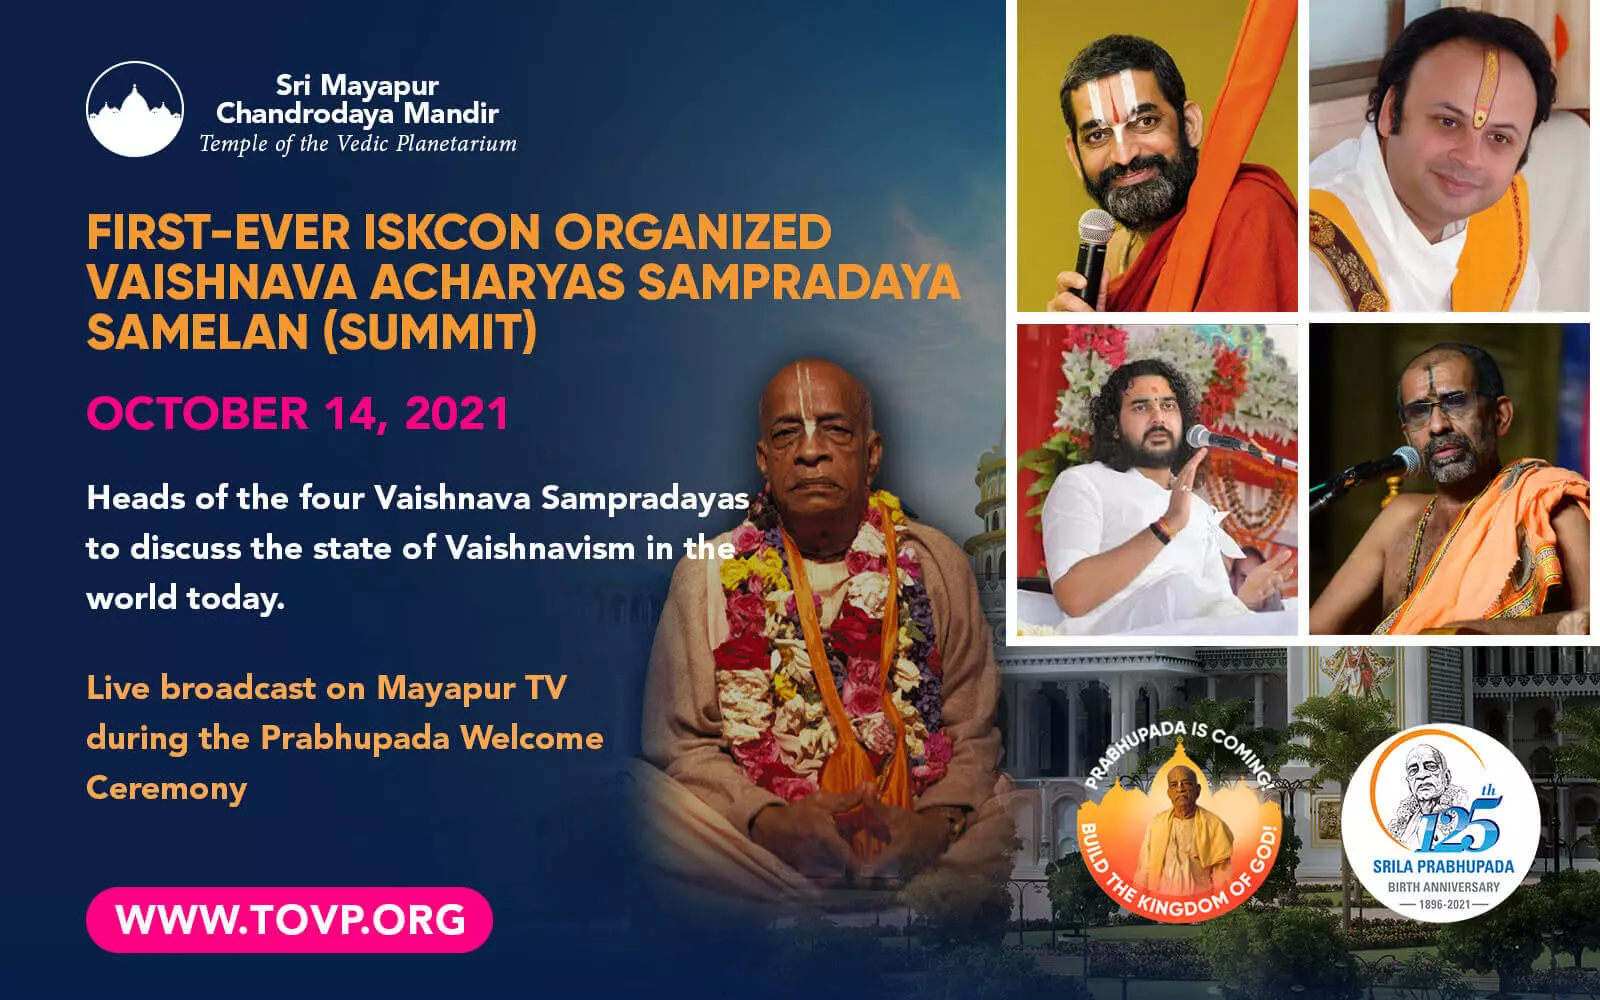 ISKCON 首次组织了 Vaishnava Acharyas Sampradaya Samelan（峰会）- 2021 年 10 月 14 日